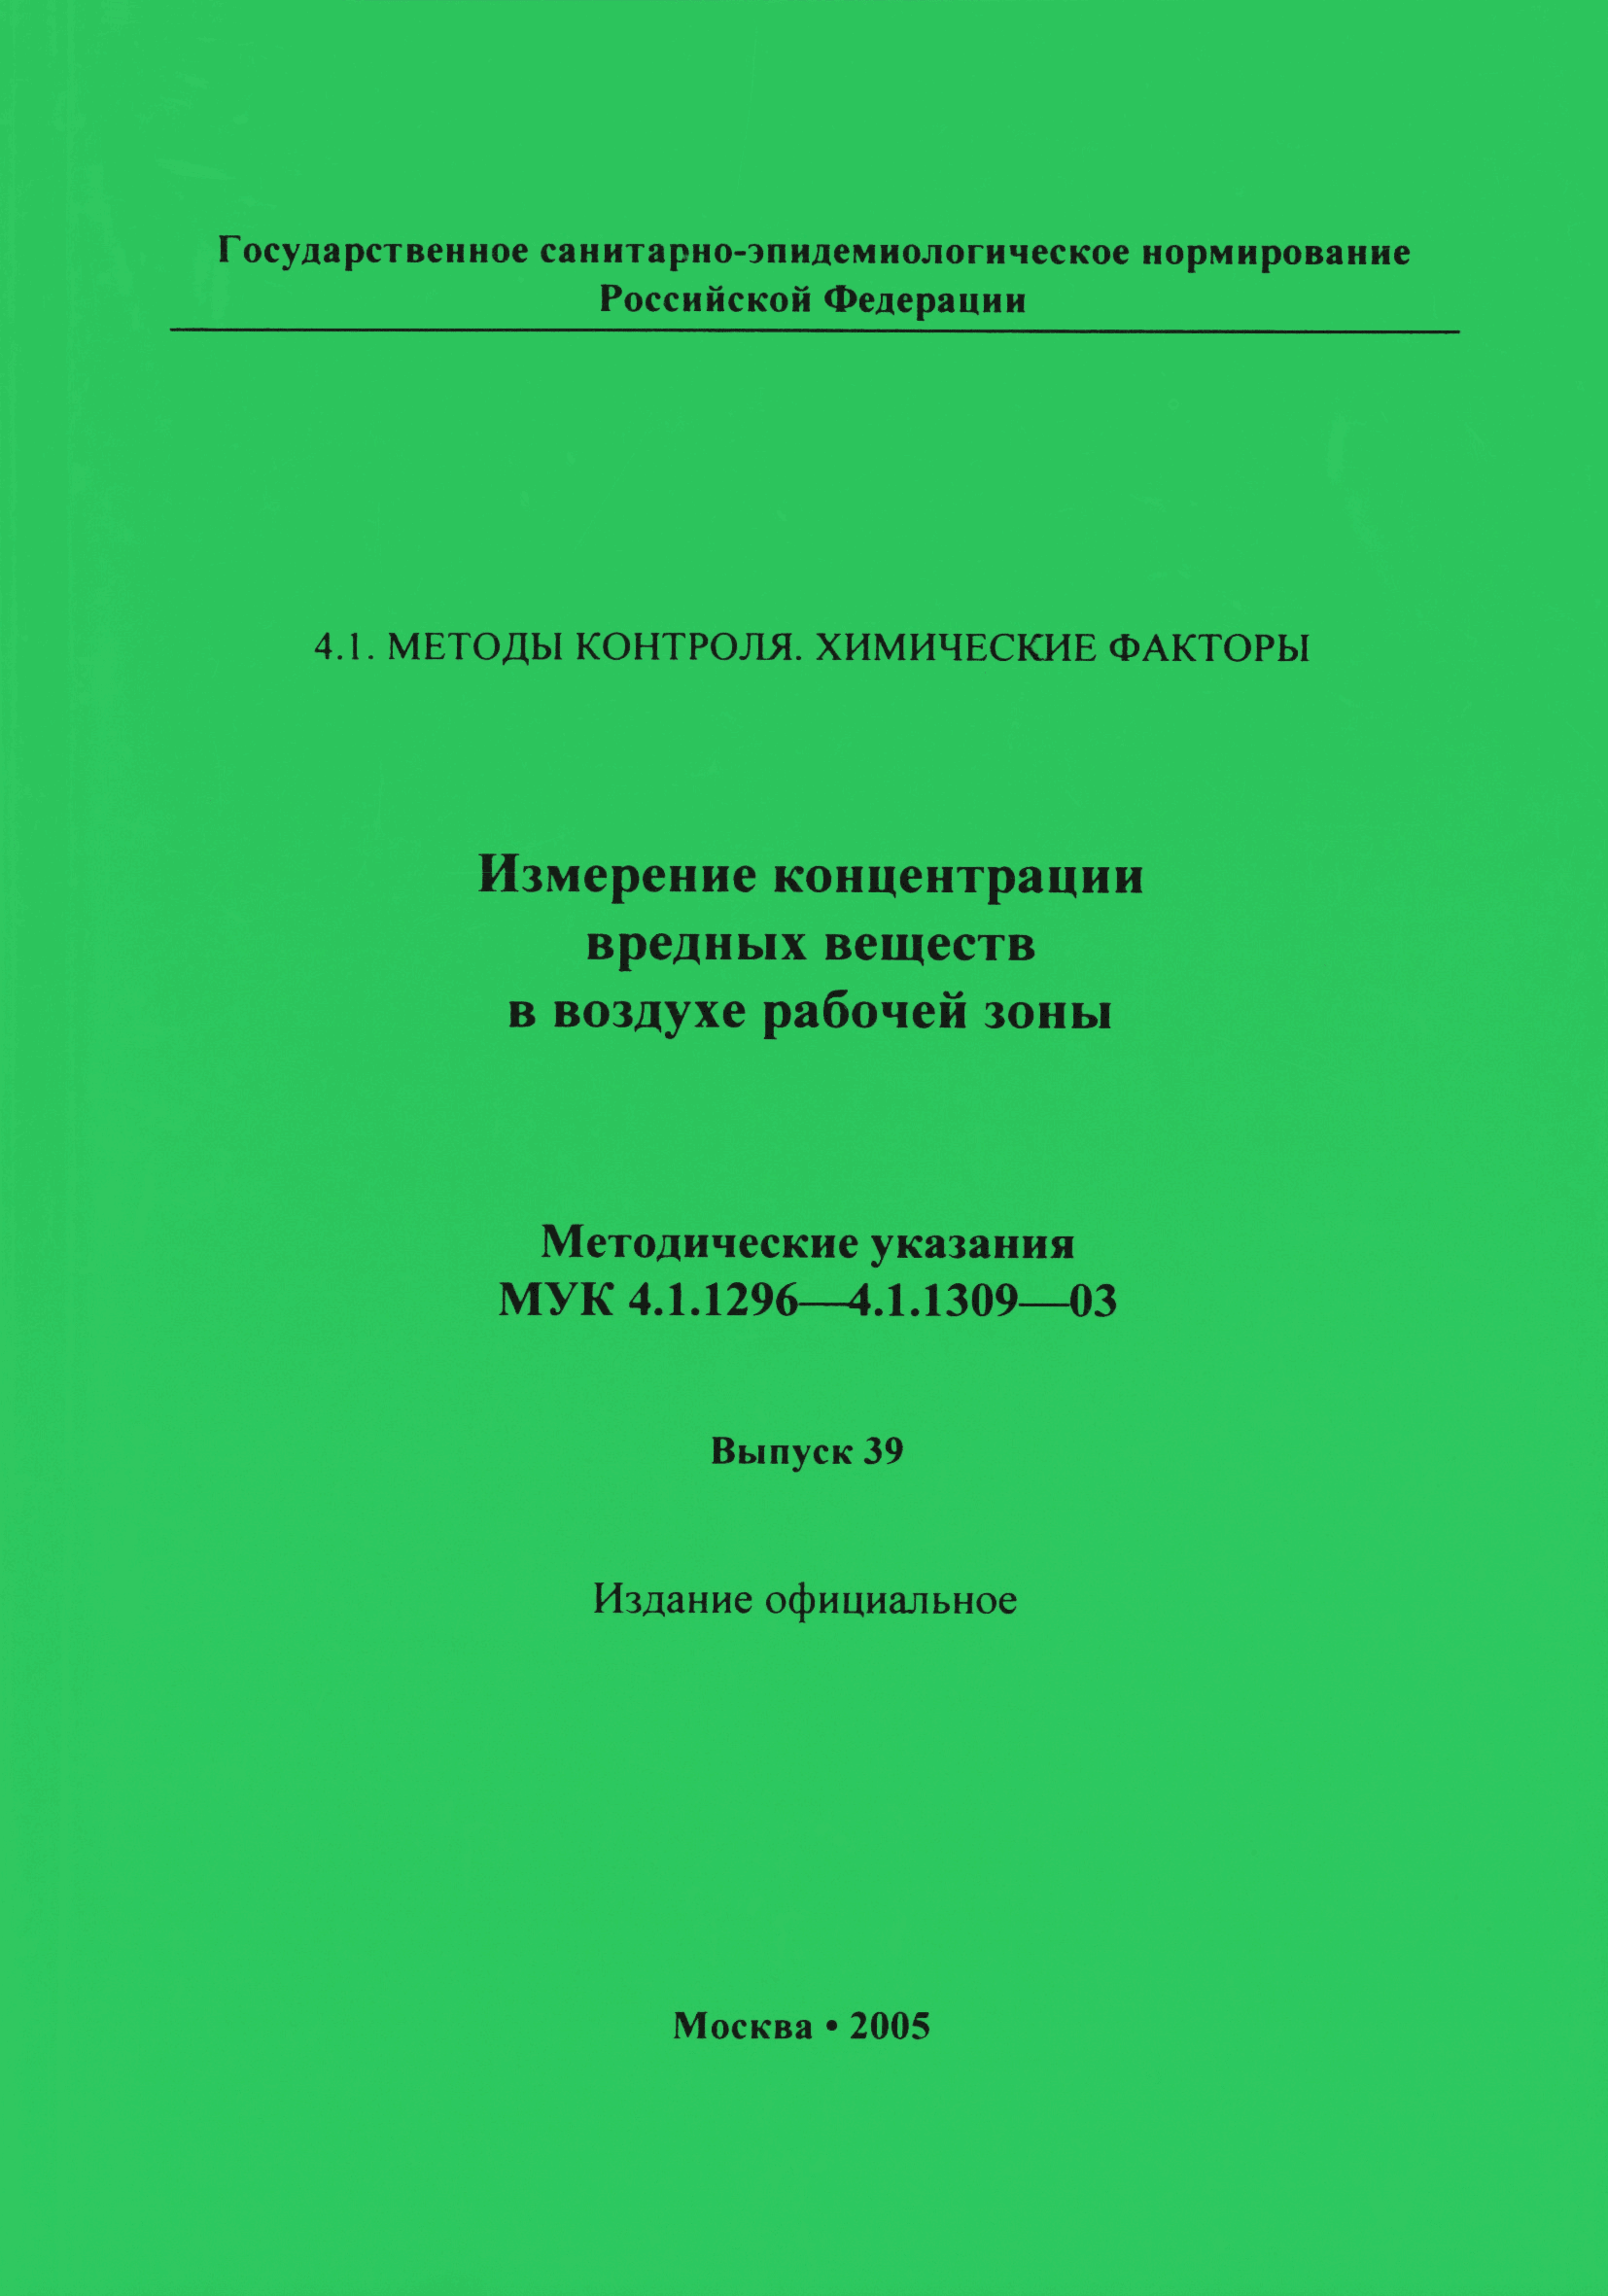 МУК 4.1.1305-03